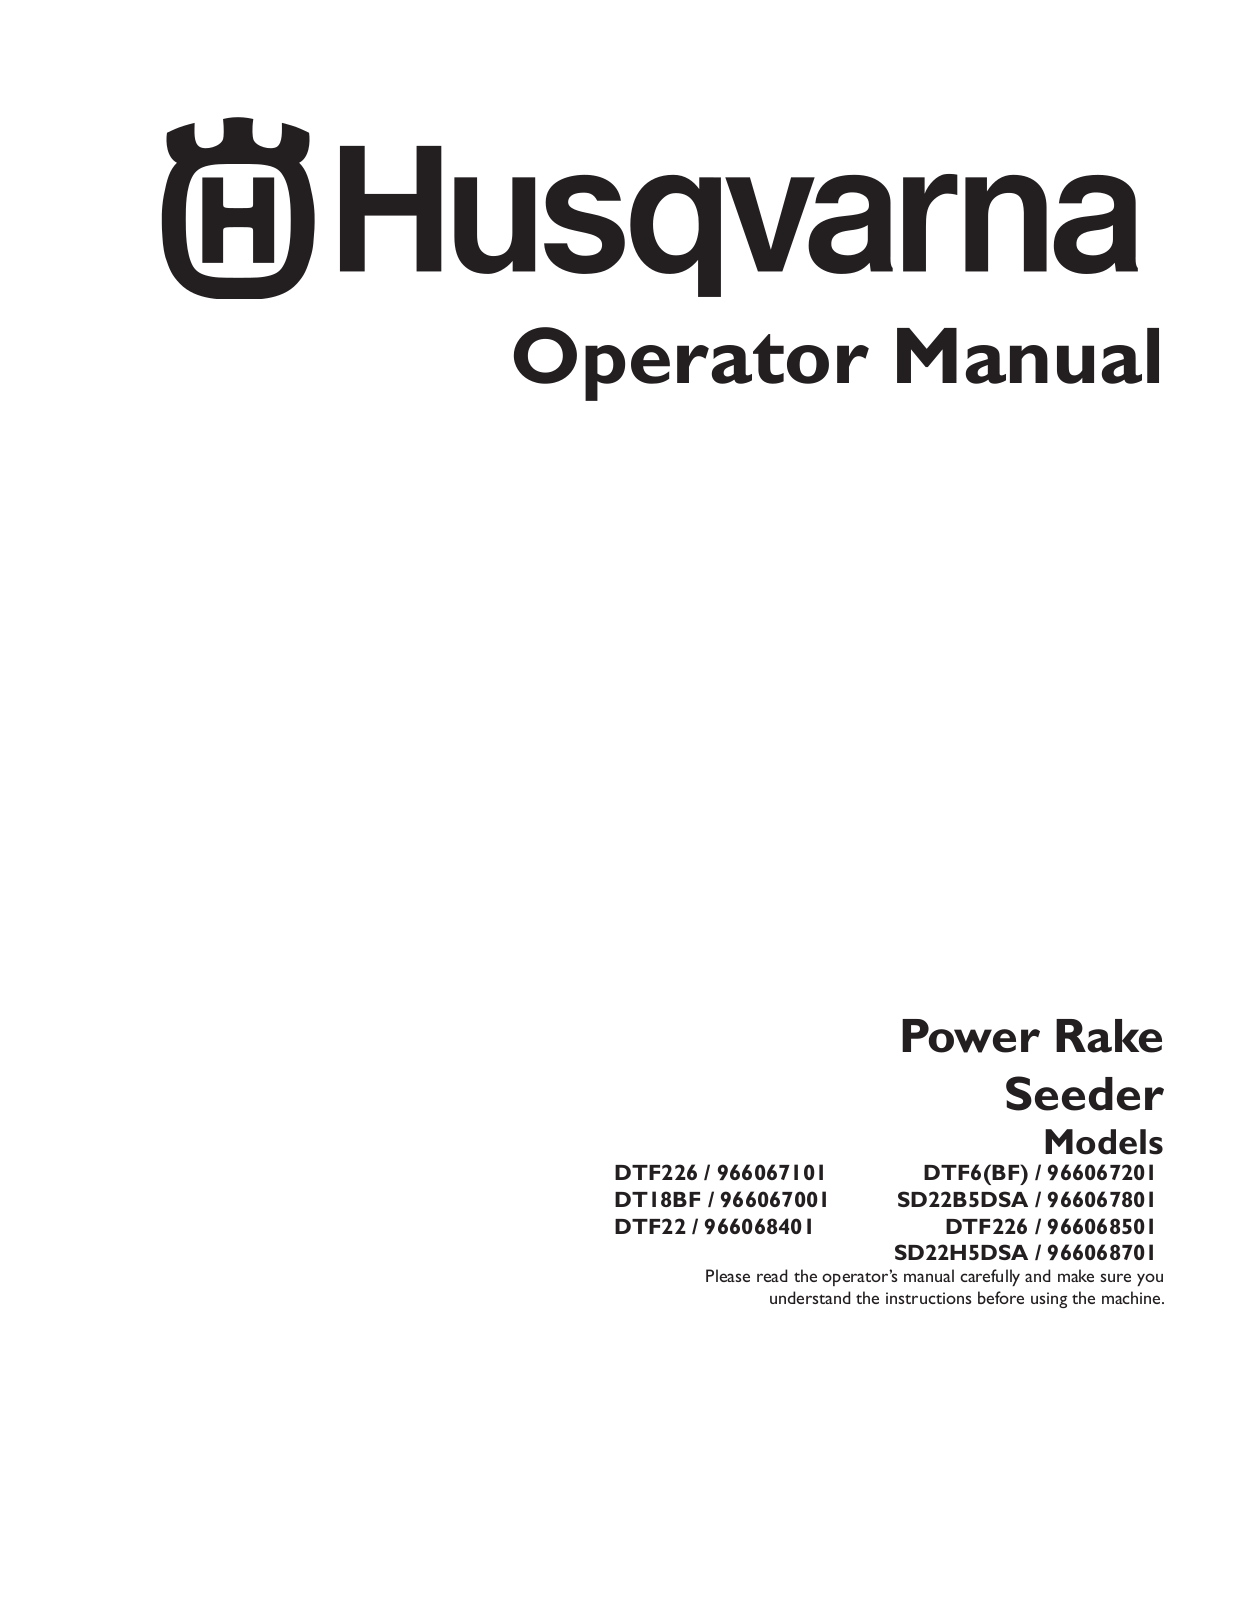 Husqvarna DT18BF, 966067101, 966067801, DTF6BF, SD22B5DSA User Manual